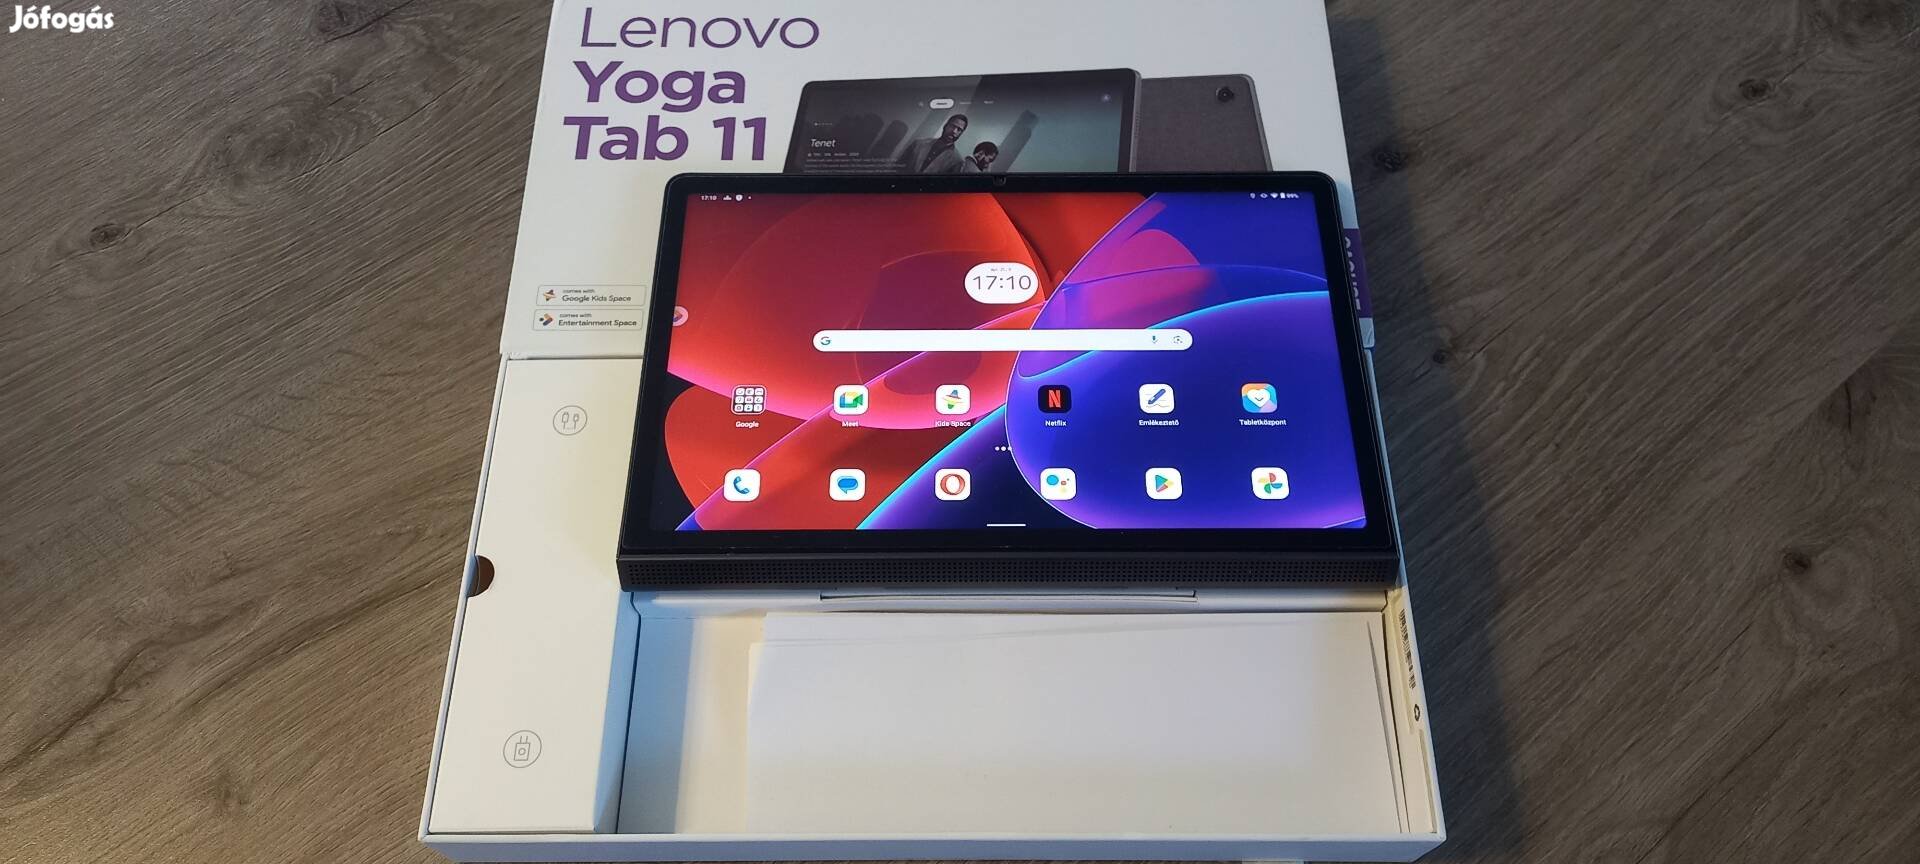 Lenovo tablet Yoga Tab 11 LTE 4GB +128GB